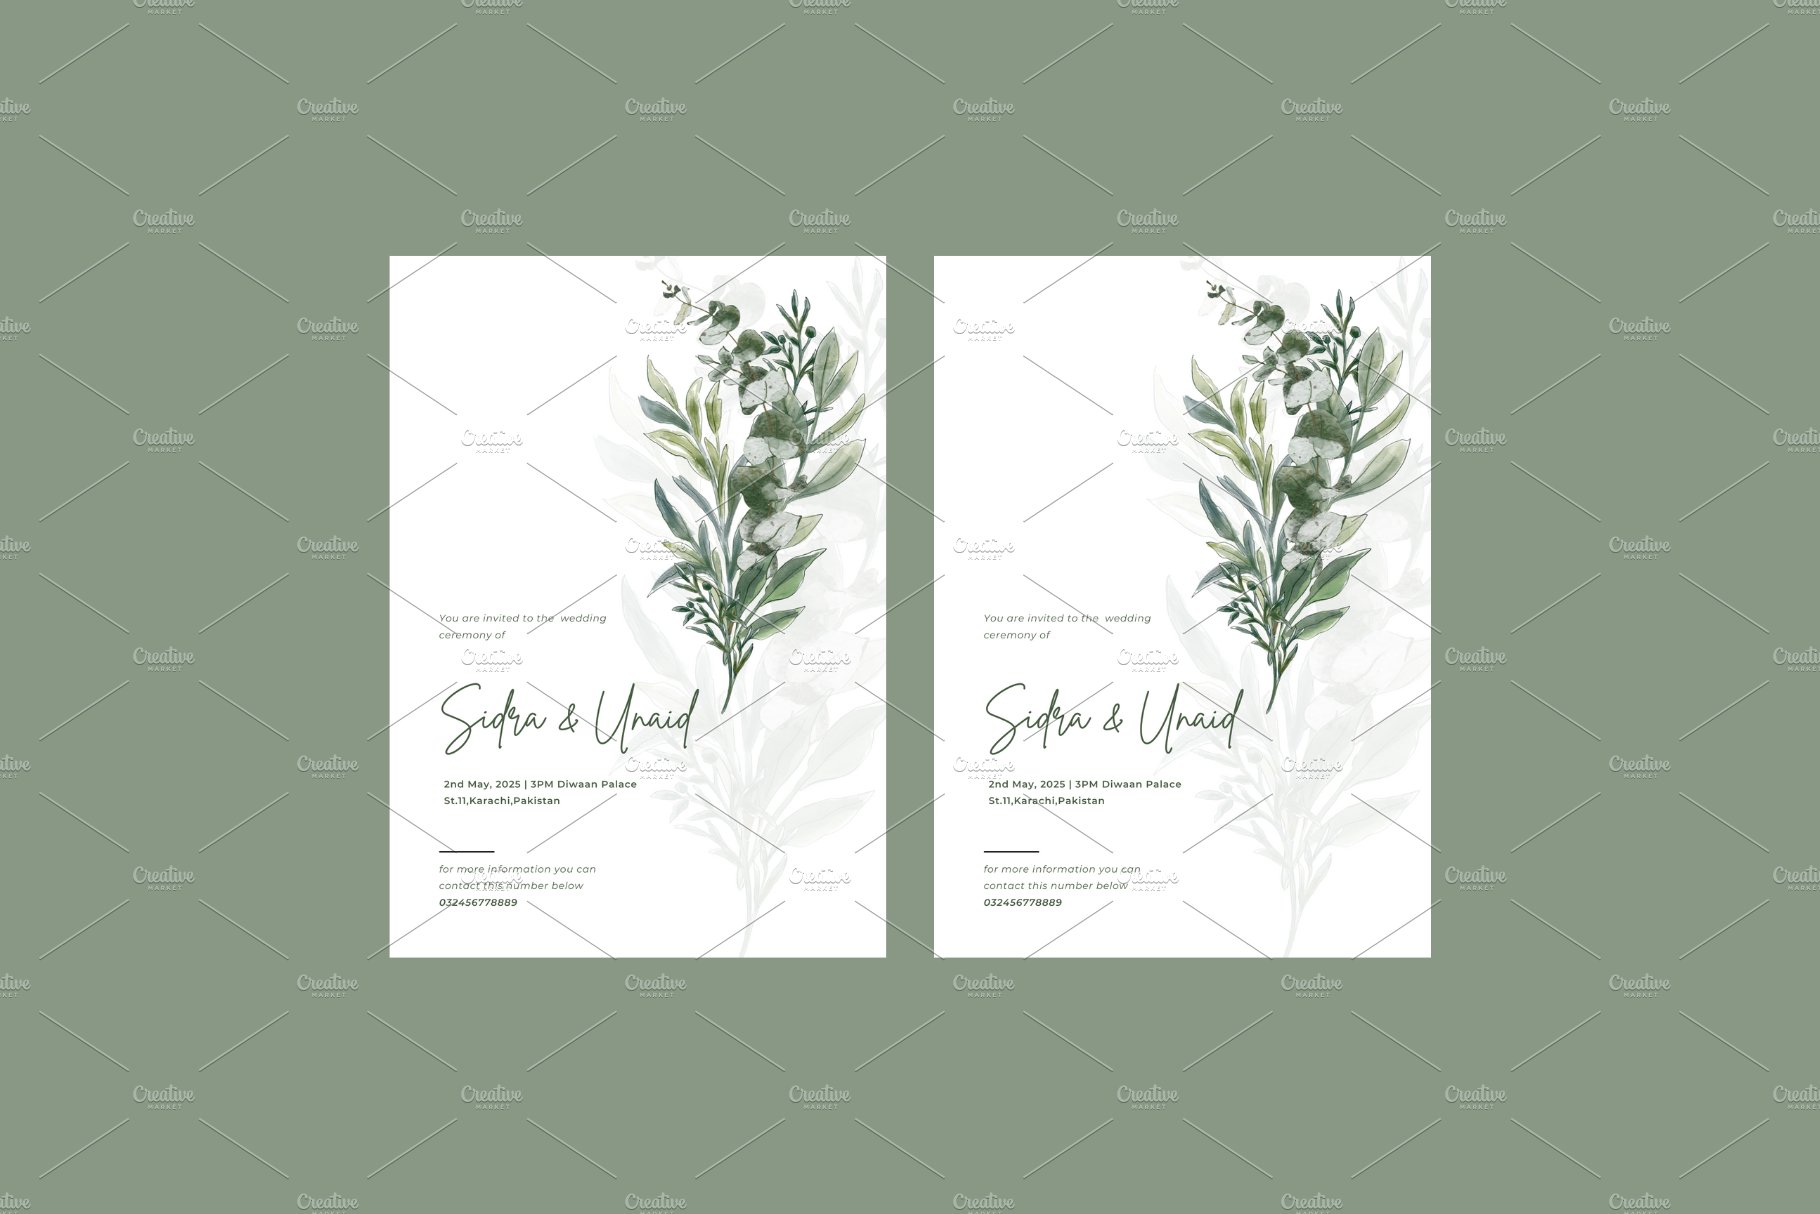 Elegant Wedding Invite cover image.